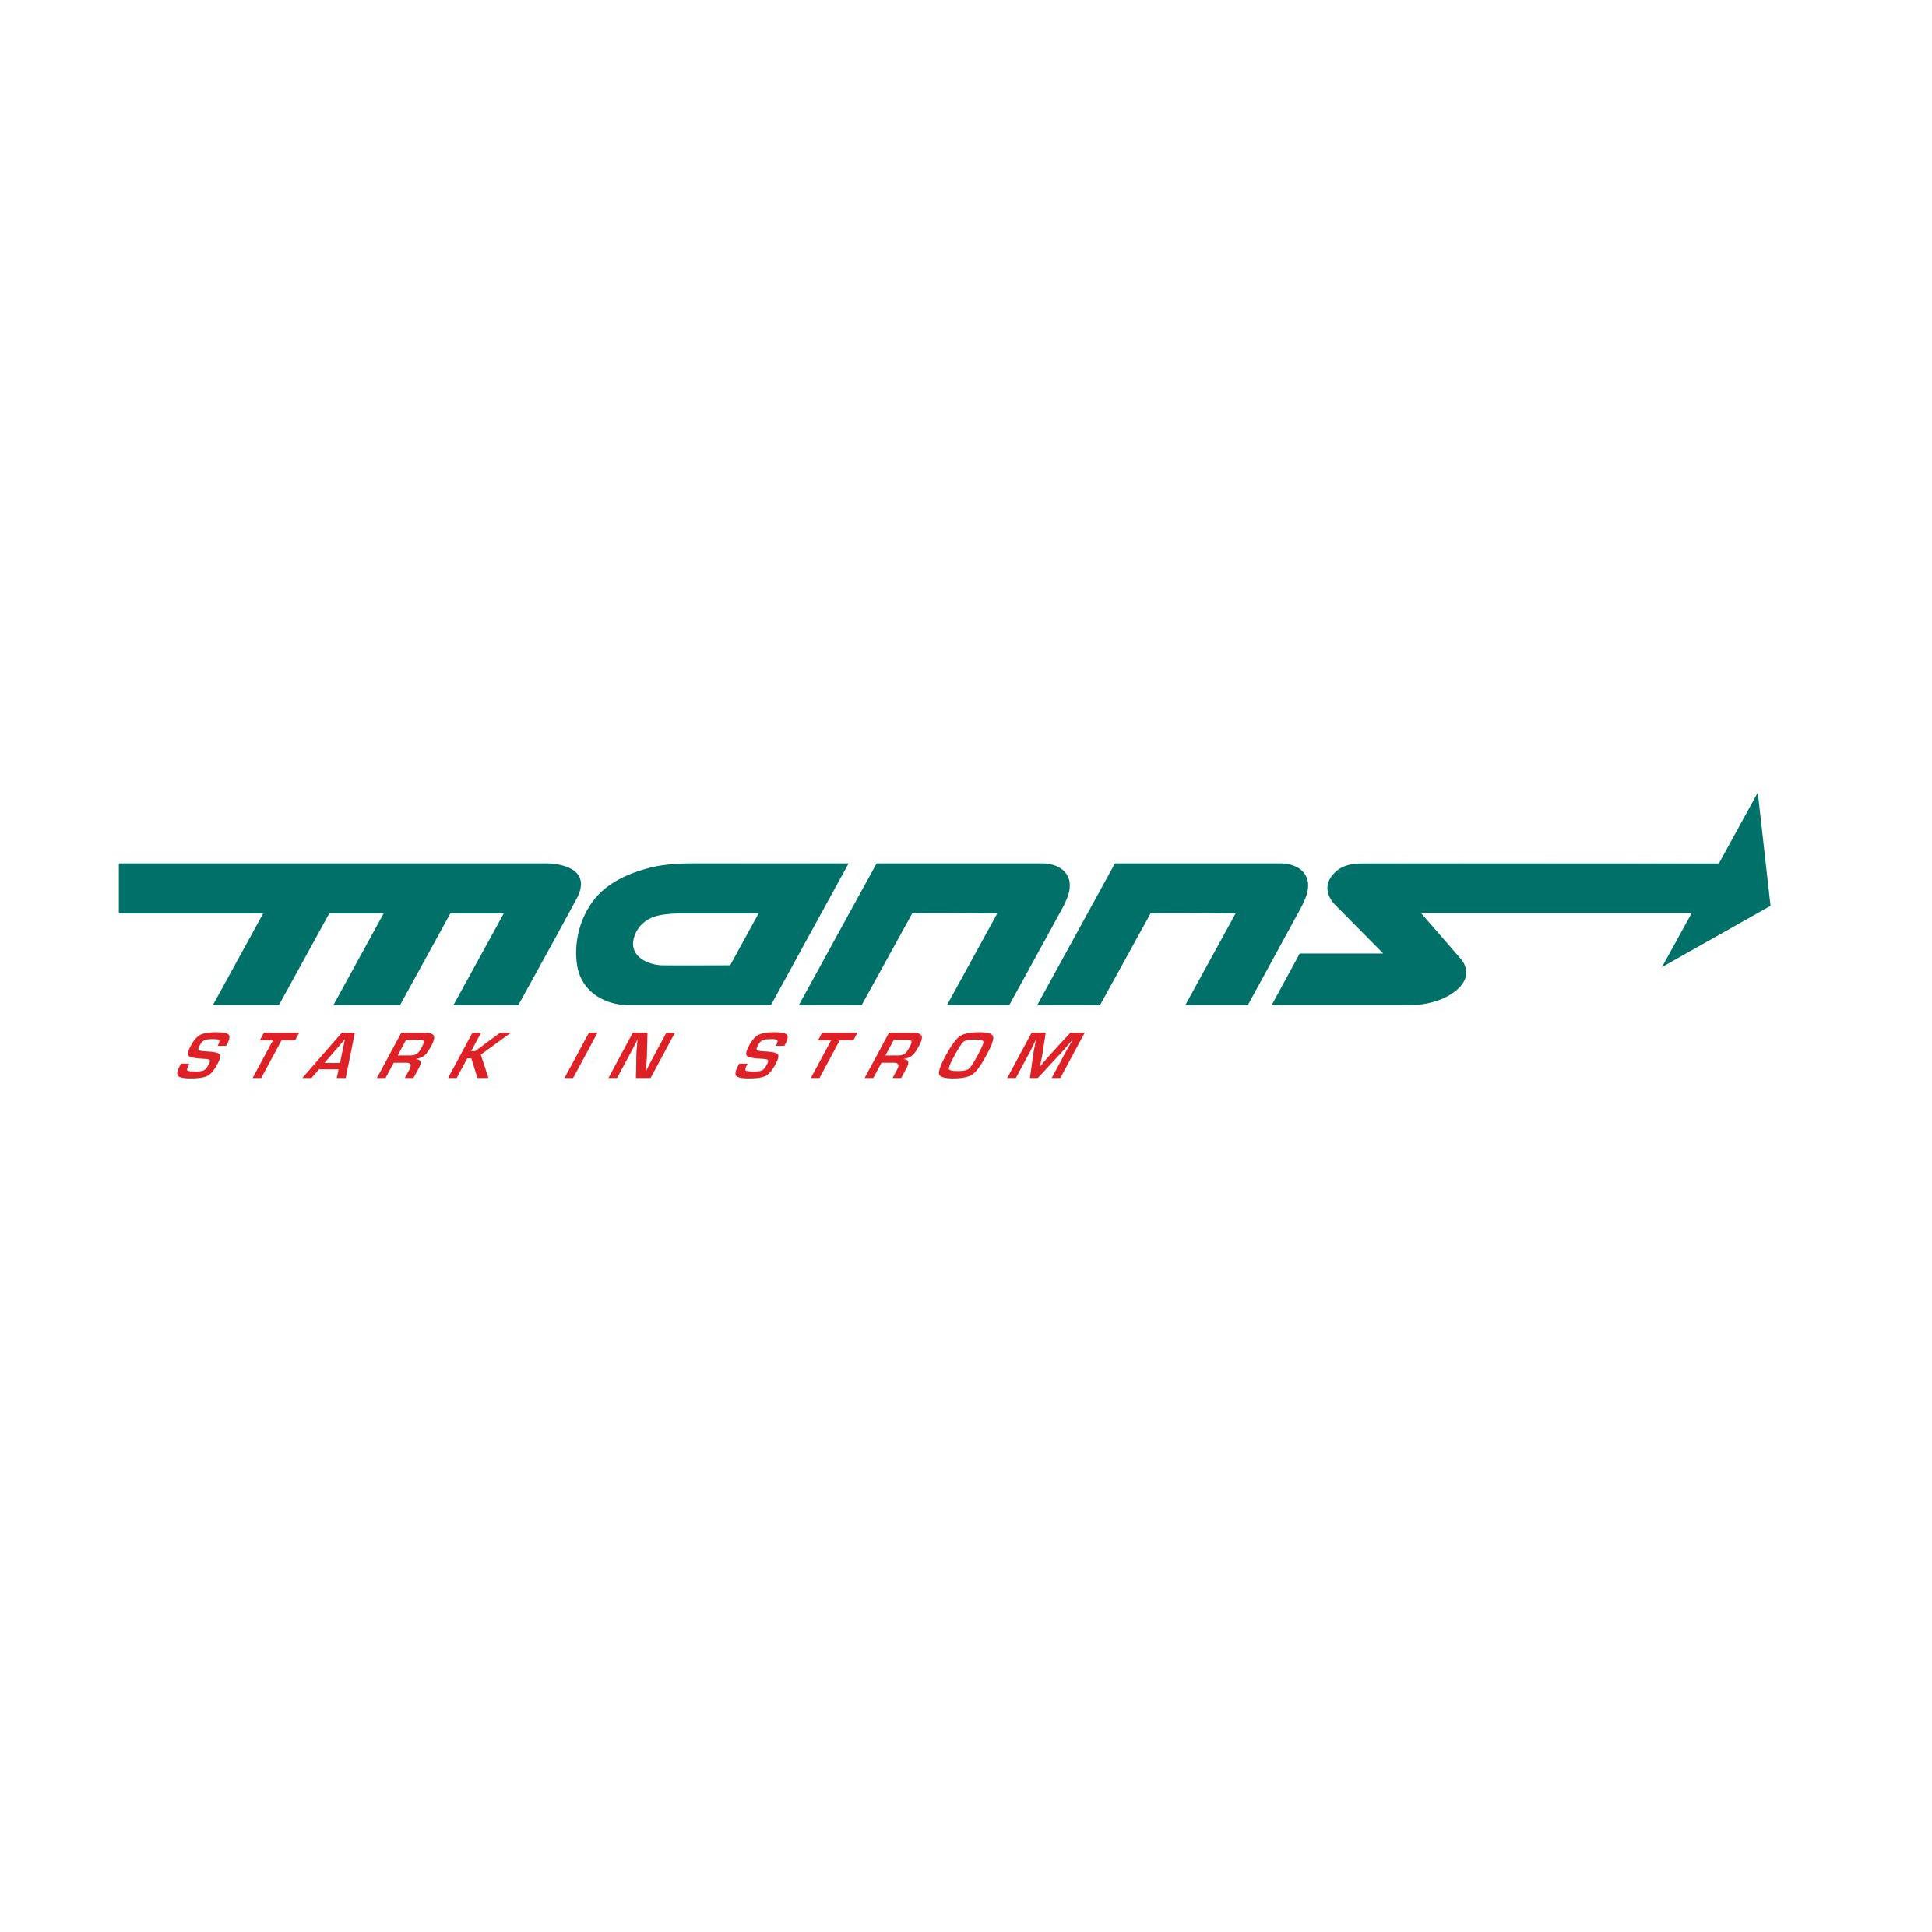 Elektro Manns Bonn in Bonn - Logo